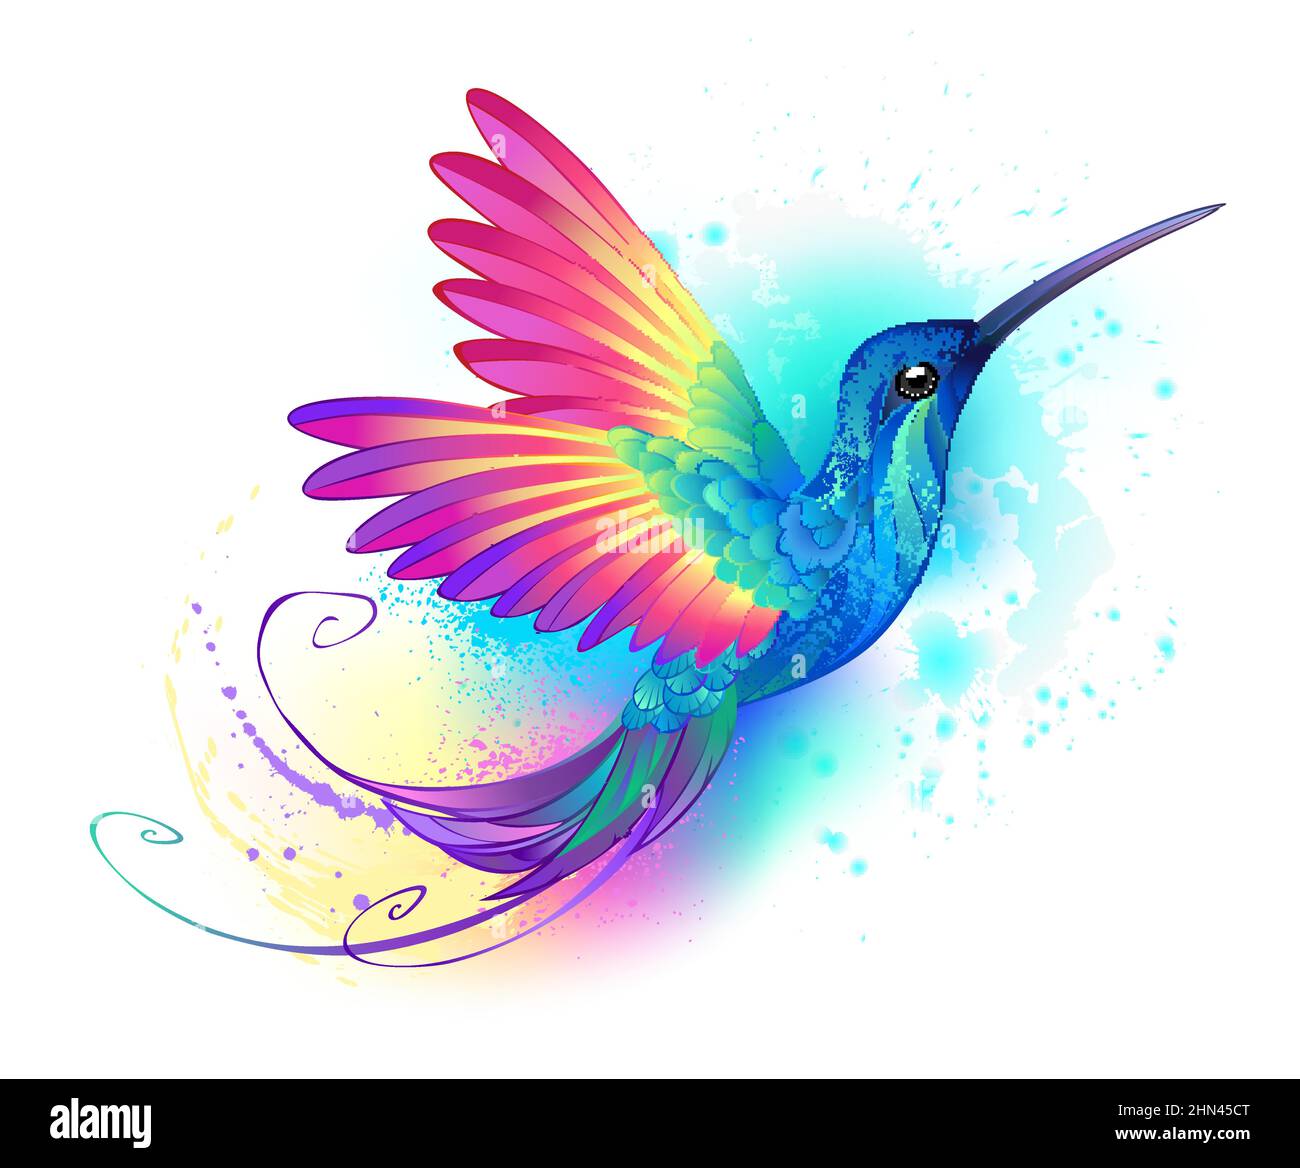 Colibri volant brillant, irisé et exotique sur fond blanc, peint avec de la peinture multicolore à l'aquarelle. Colibri arc-en-ciel. Illustration de Vecteur